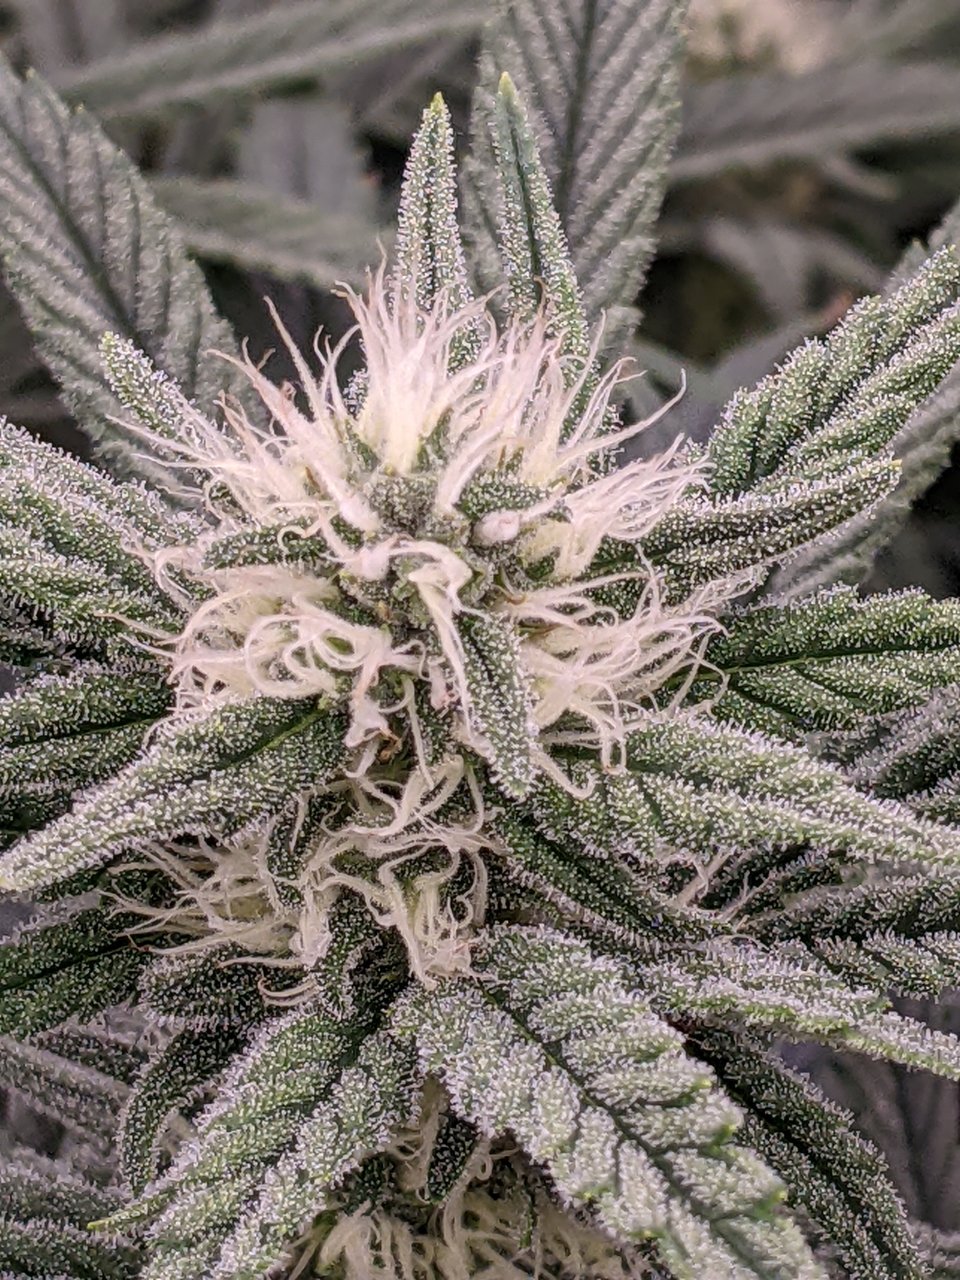 Grandmommy Purple - Herbies - Week 4 flower